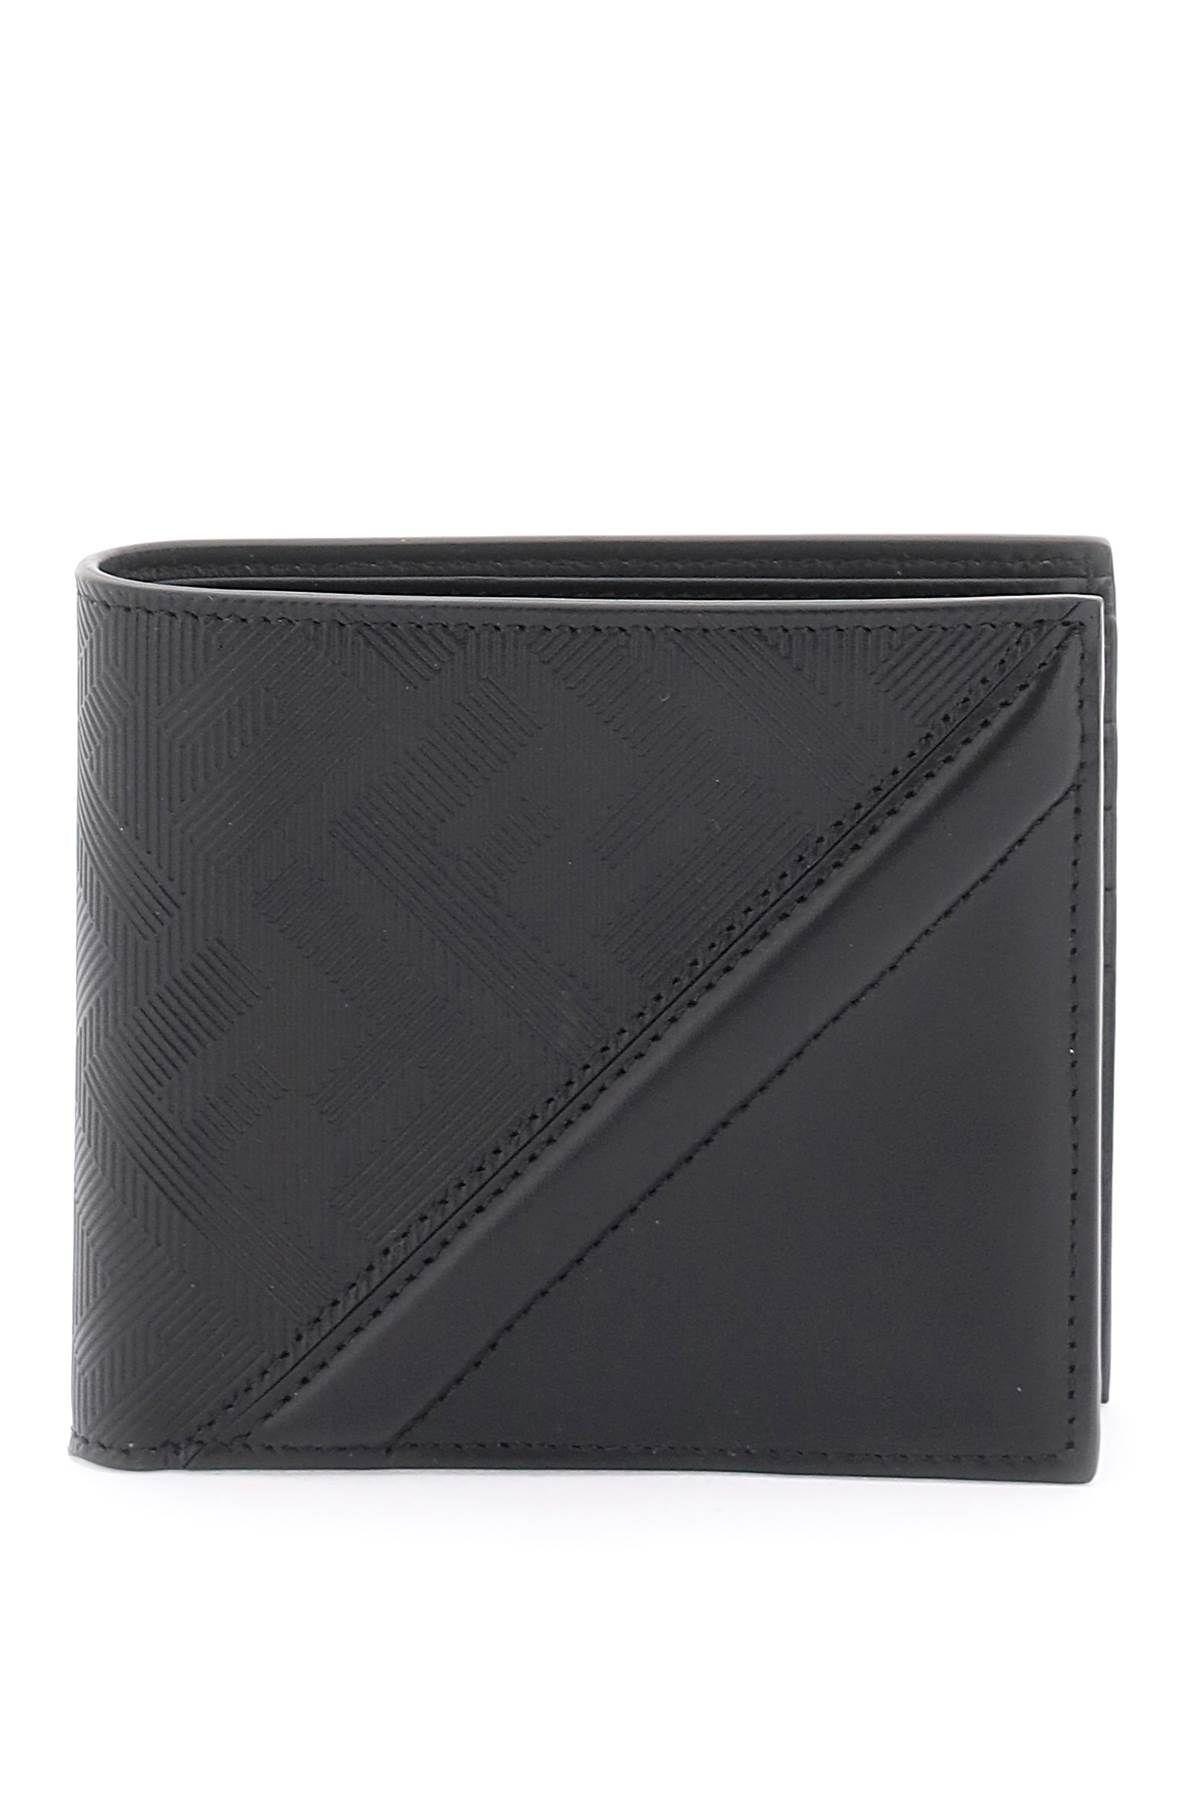 Fendi Shadow Wallet Leather Grey